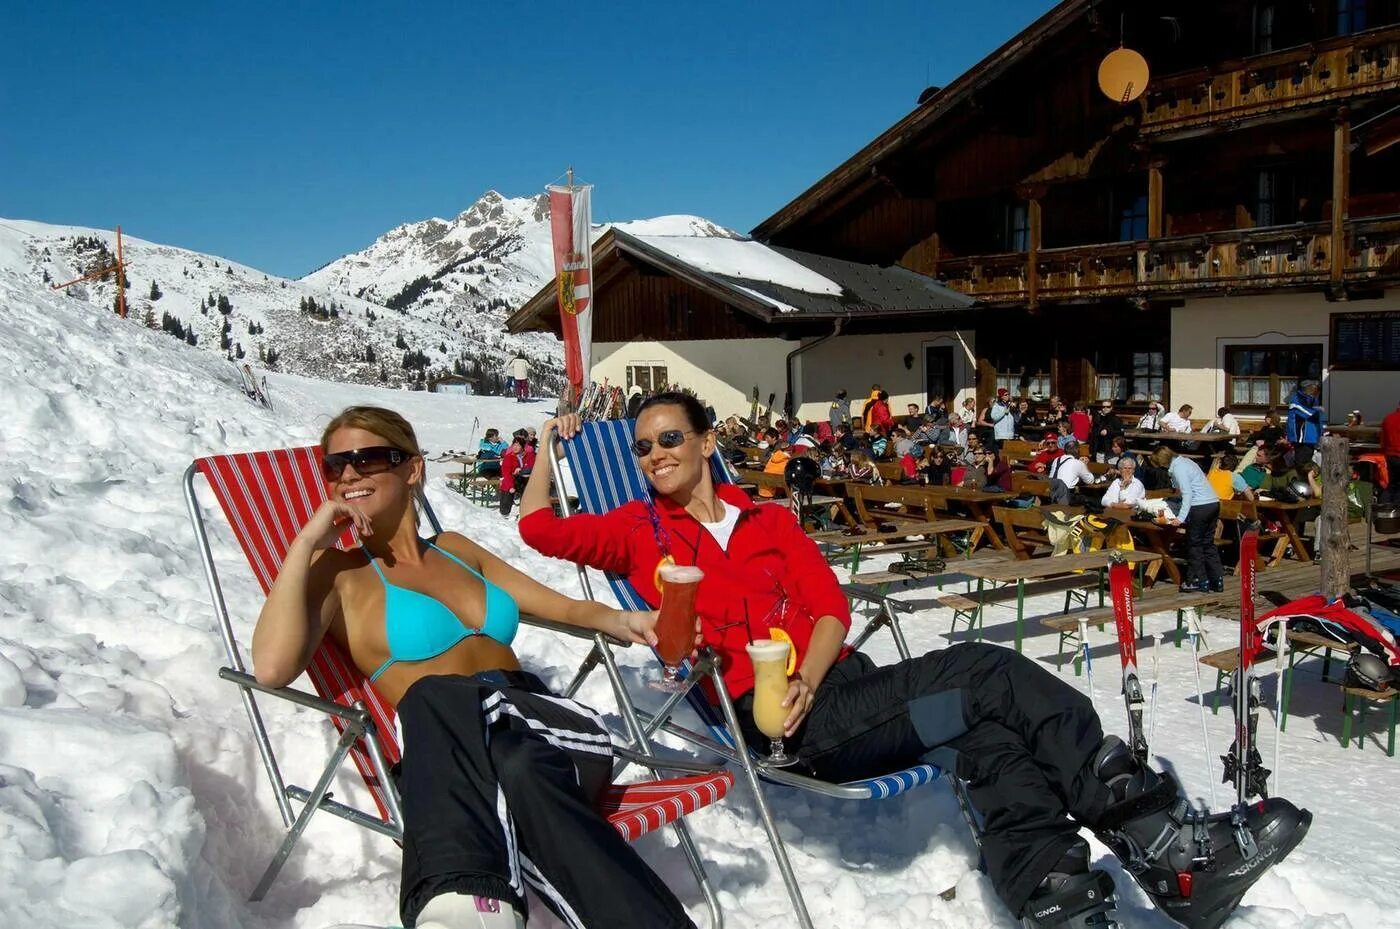 Майрхофен apres Ski Австрия. Apres Ski красная Поляна. Красная Поляна, бар apres Ski. Отель в Швейцарии apres Ski. Покататься на горнолыжном курорте